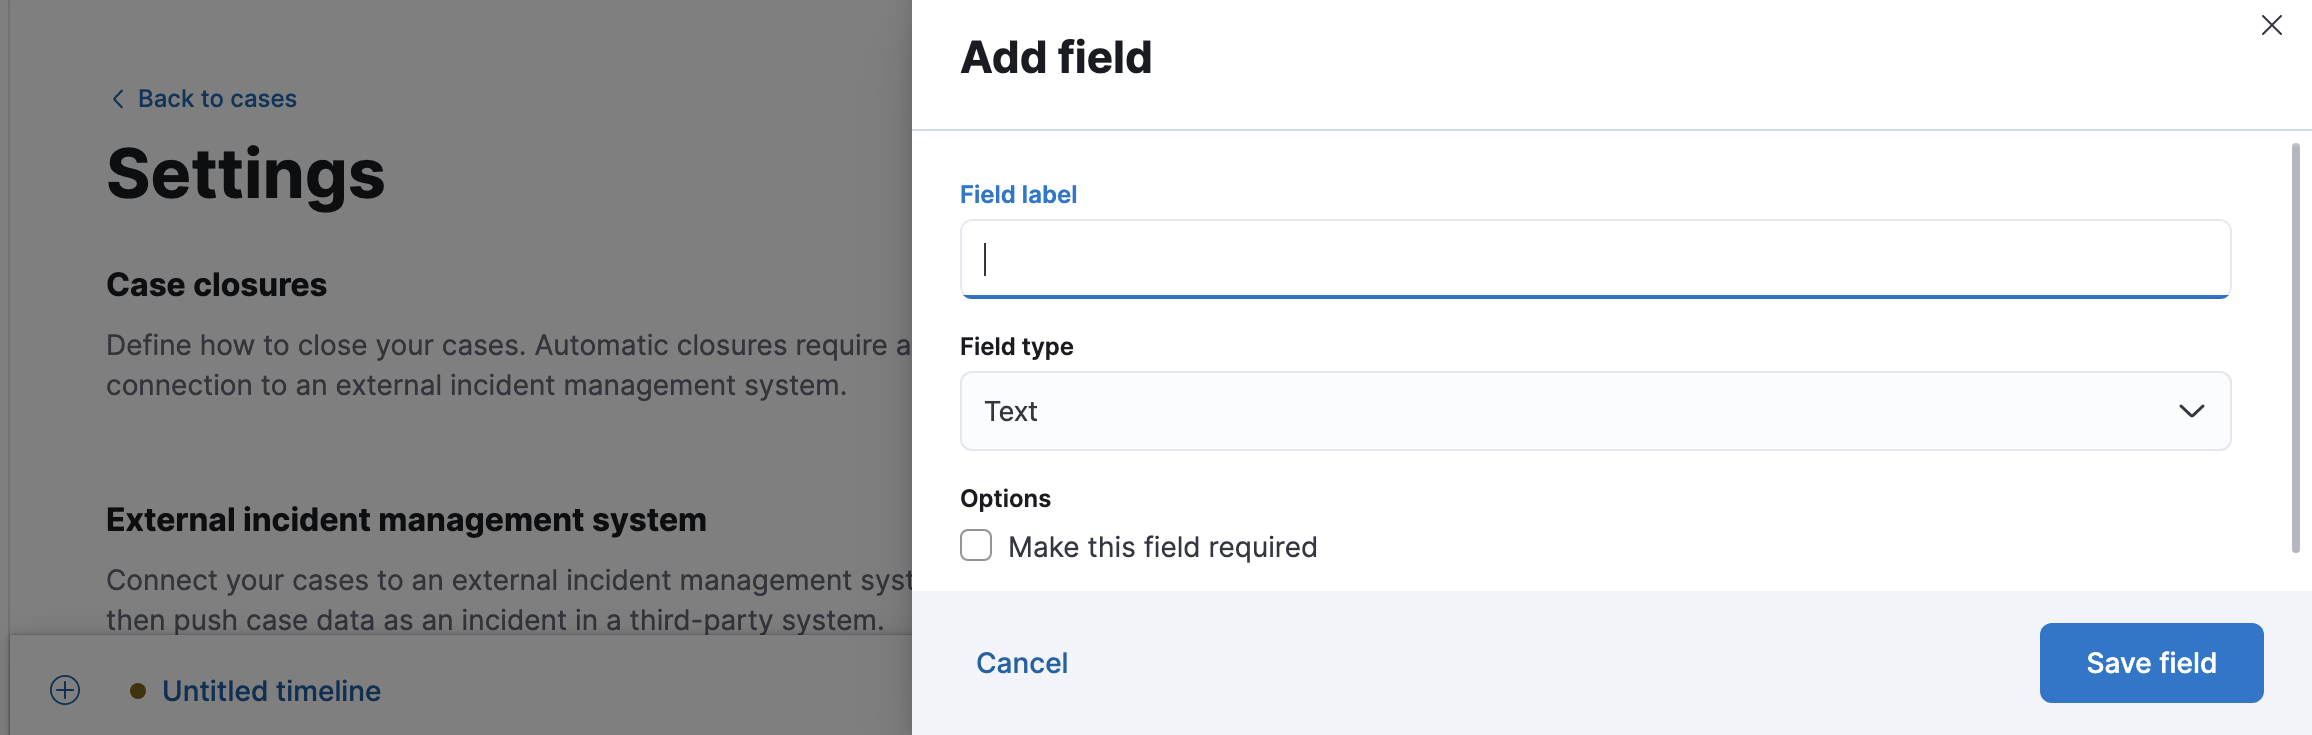 Add a custom field in case settings